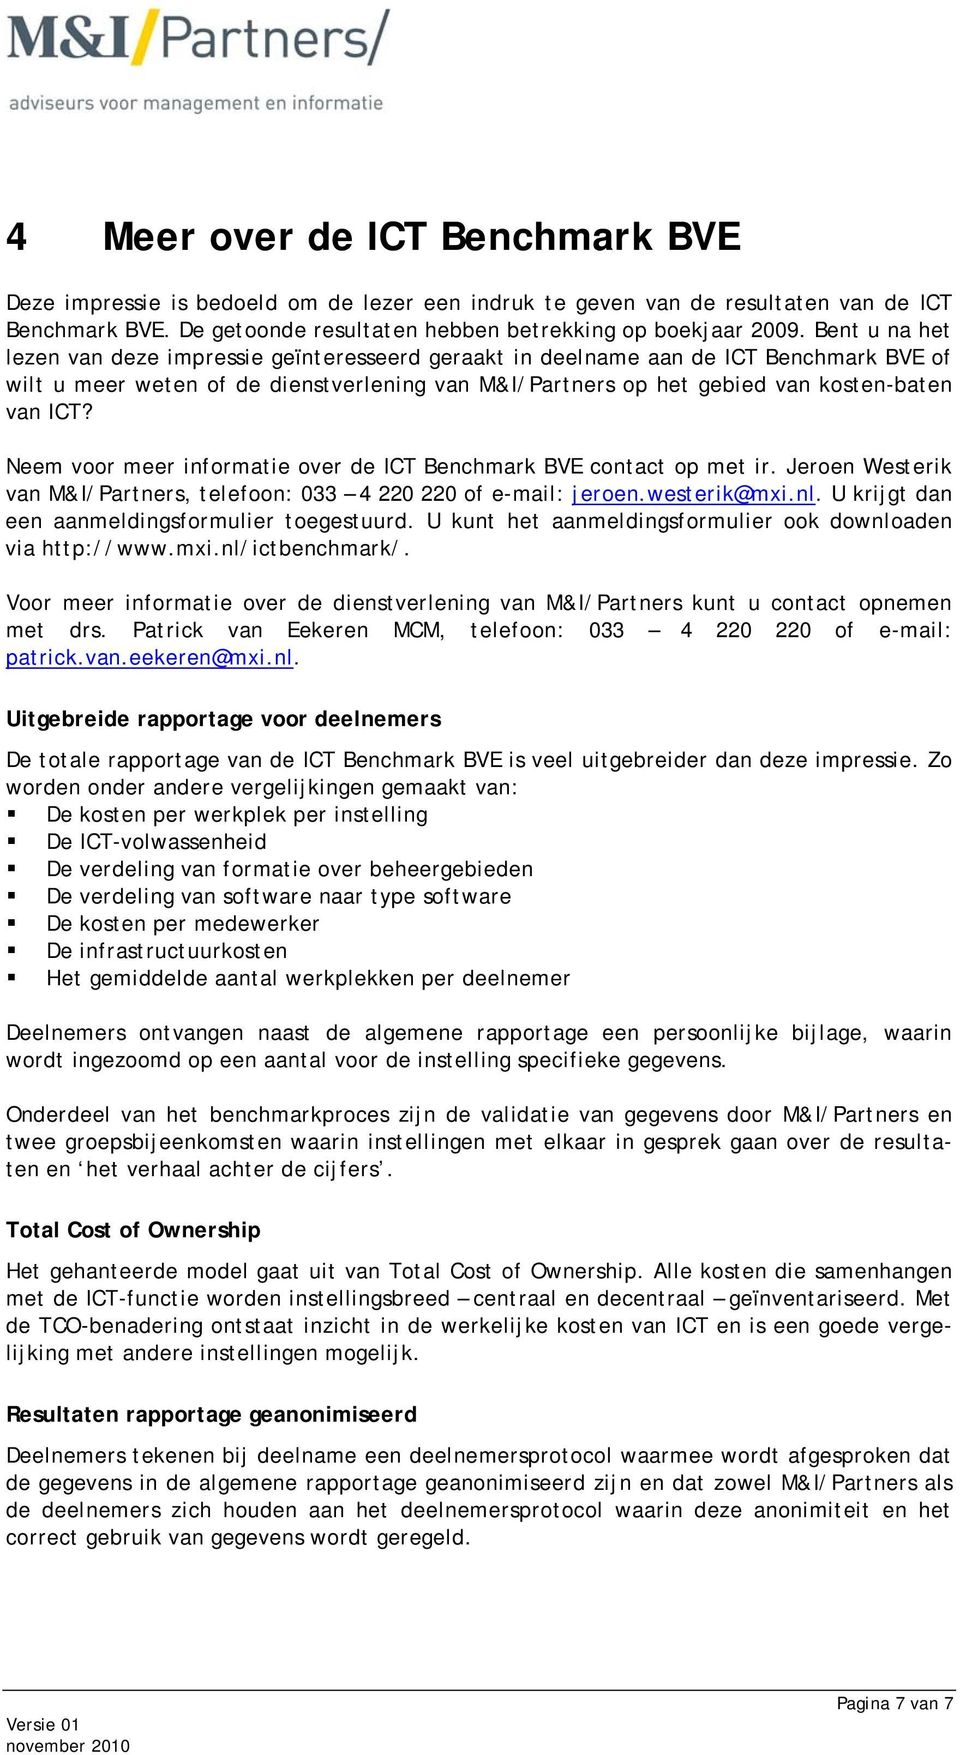 Neem voor meer informatie over de ICT Benchmark BVE contact op met ir. Jeroen Westerik van M&I/Partners, telefoon: 033 4 220 220 of e-mail: jeroen.westerik@mxi.nl.